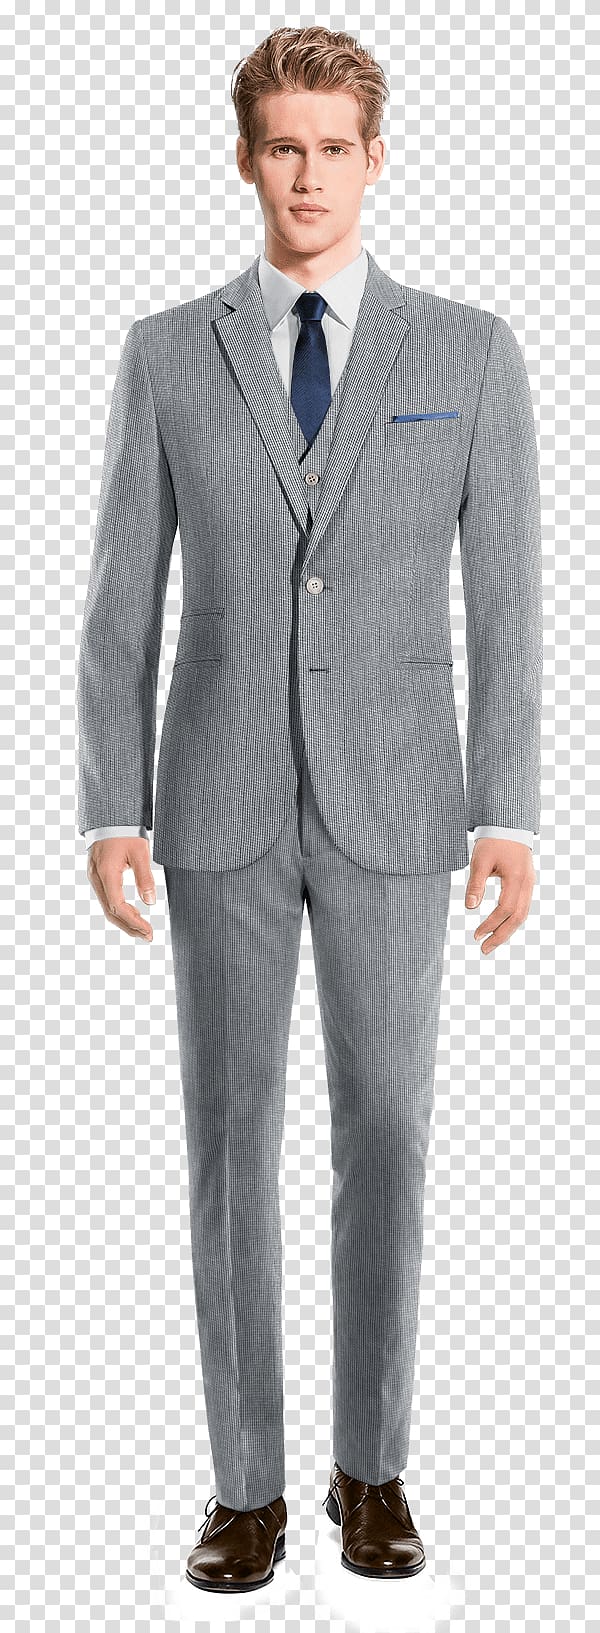 Sport coat Pants Blue Tweed Suit, business trousers transparent background PNG clipart